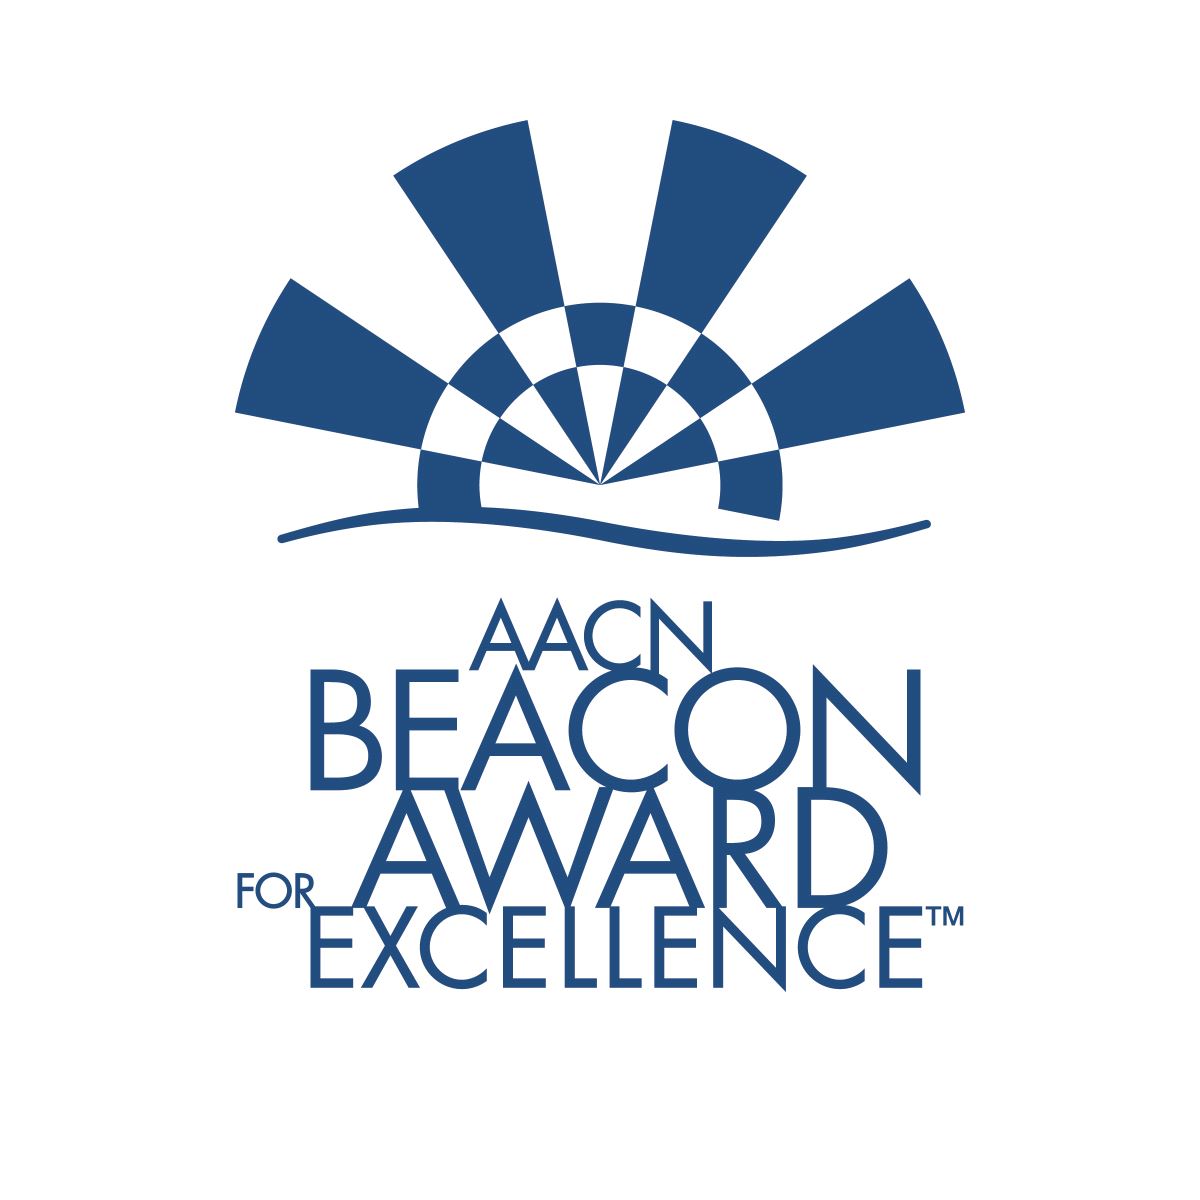 PICU beacon award logo